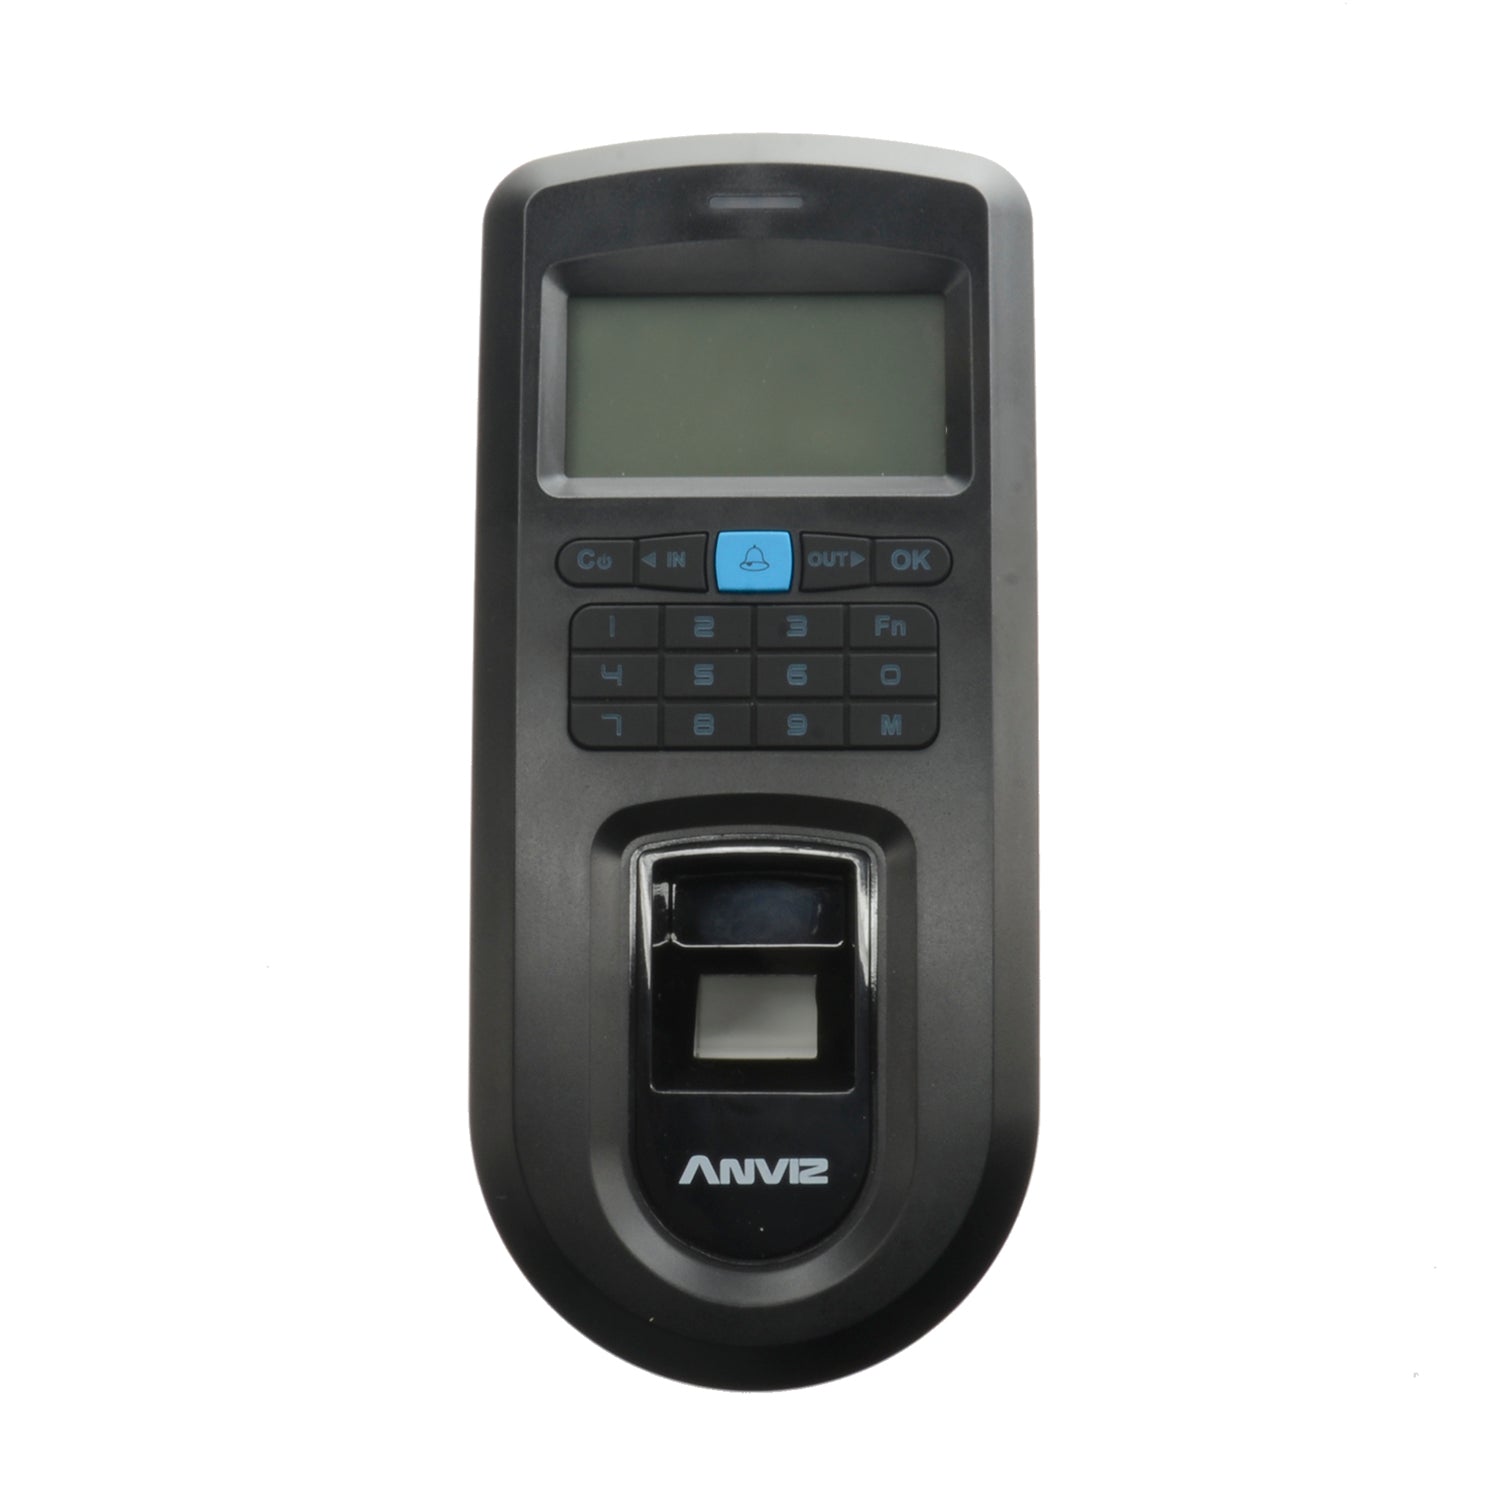 Lettore biometrico autonomo ANVIZ - Impronte digitali, MF e tastiera - 2000 registrazioni / 50000 registri - TCP/IP, RS485, miniUSB, Wiegand 26 - Controller integrato | Anti-passback - Controllo gruppi e orari